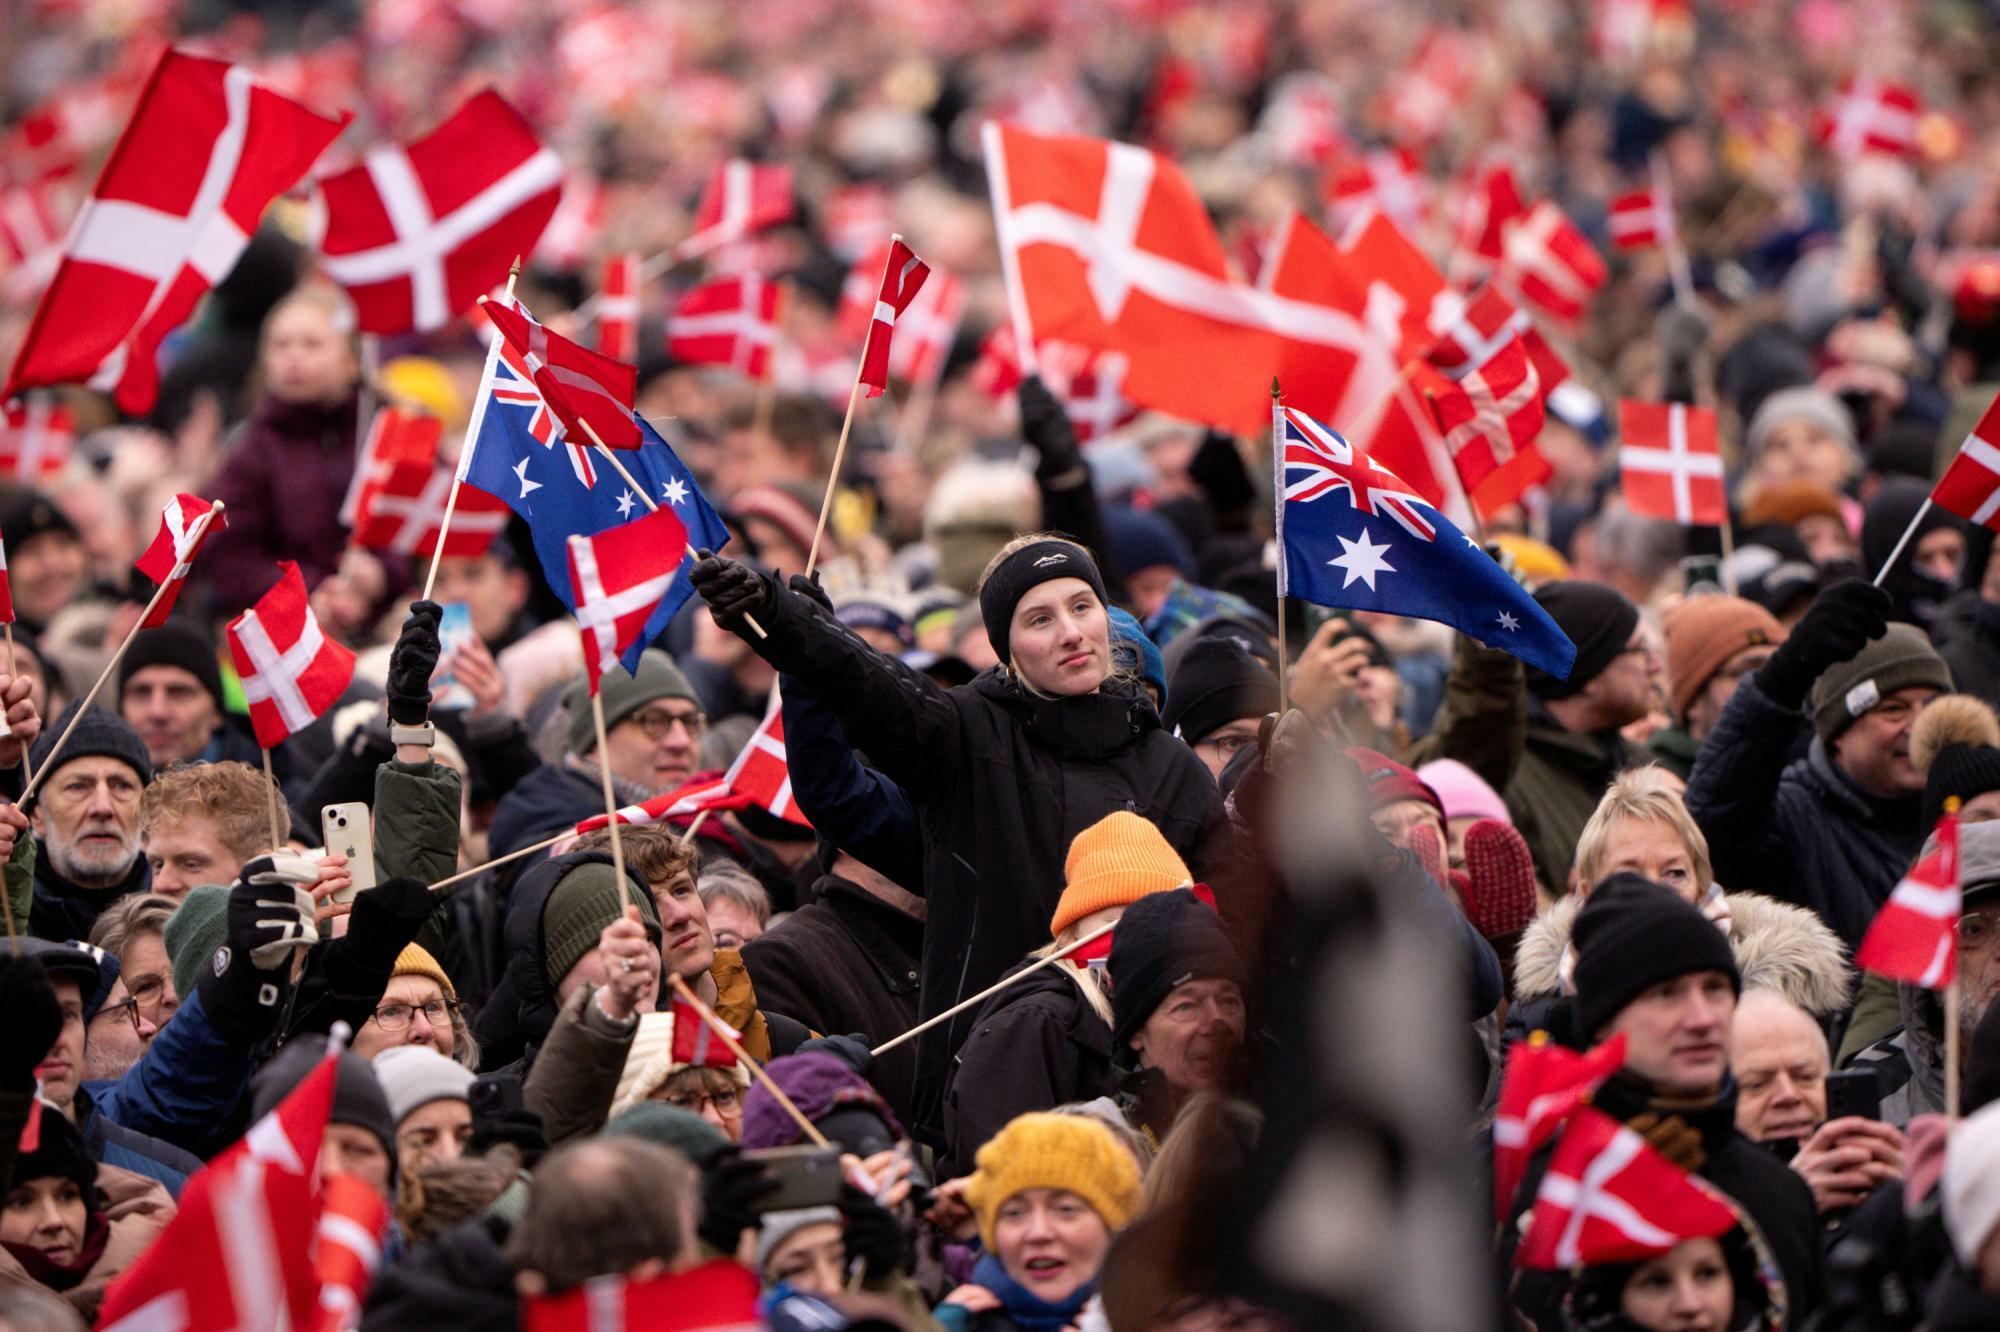 デンマーク新国王の即位を祝う国民。メアリー王妃の出身国オーストラリアの国旗を掲げる人も